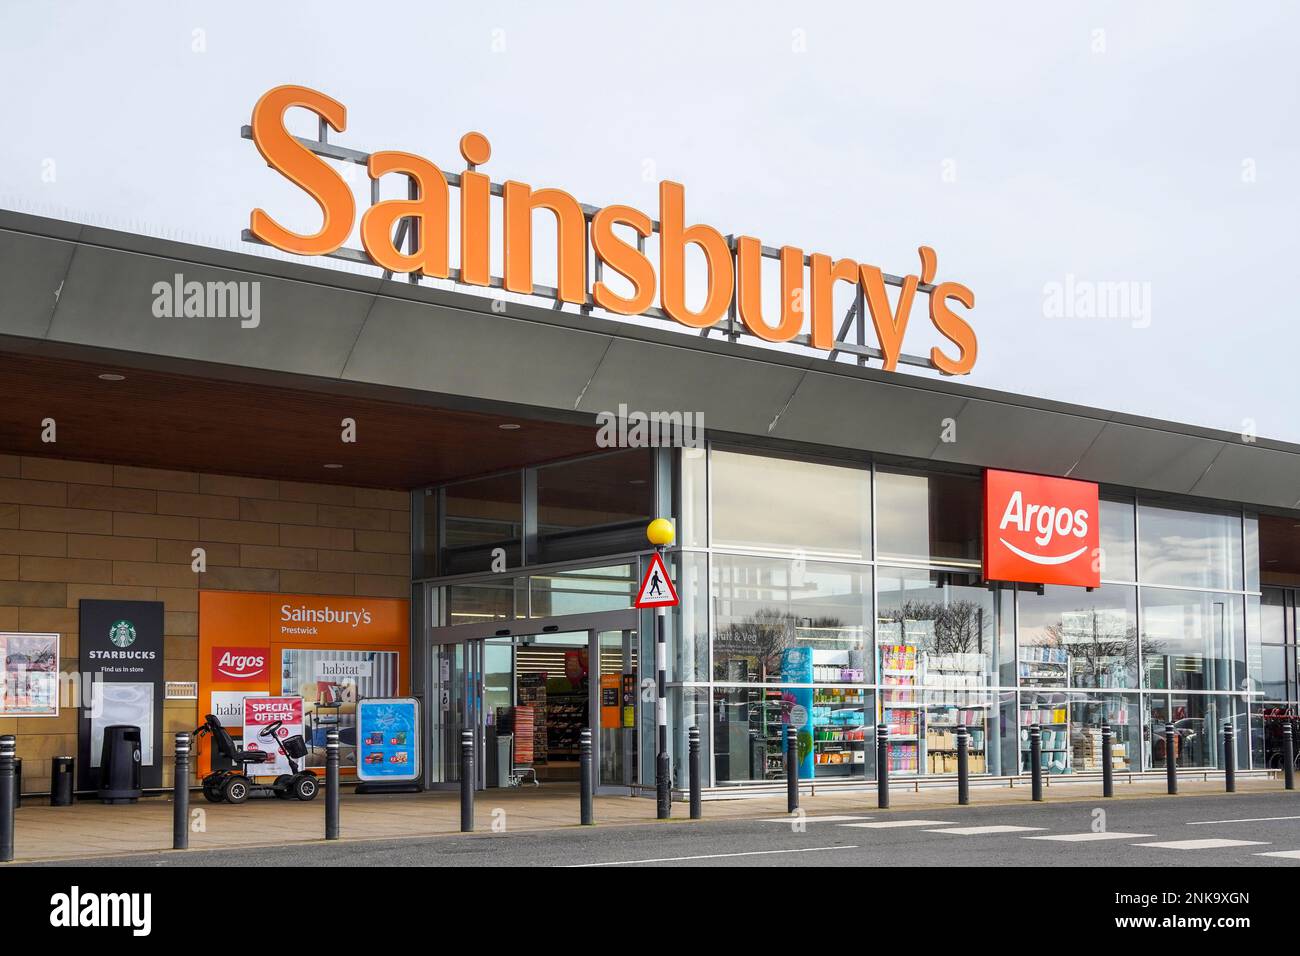 Entrée au supermarché Sainsbury's, Prestwick, Écosse, Royaume-Uni Banque D'Images